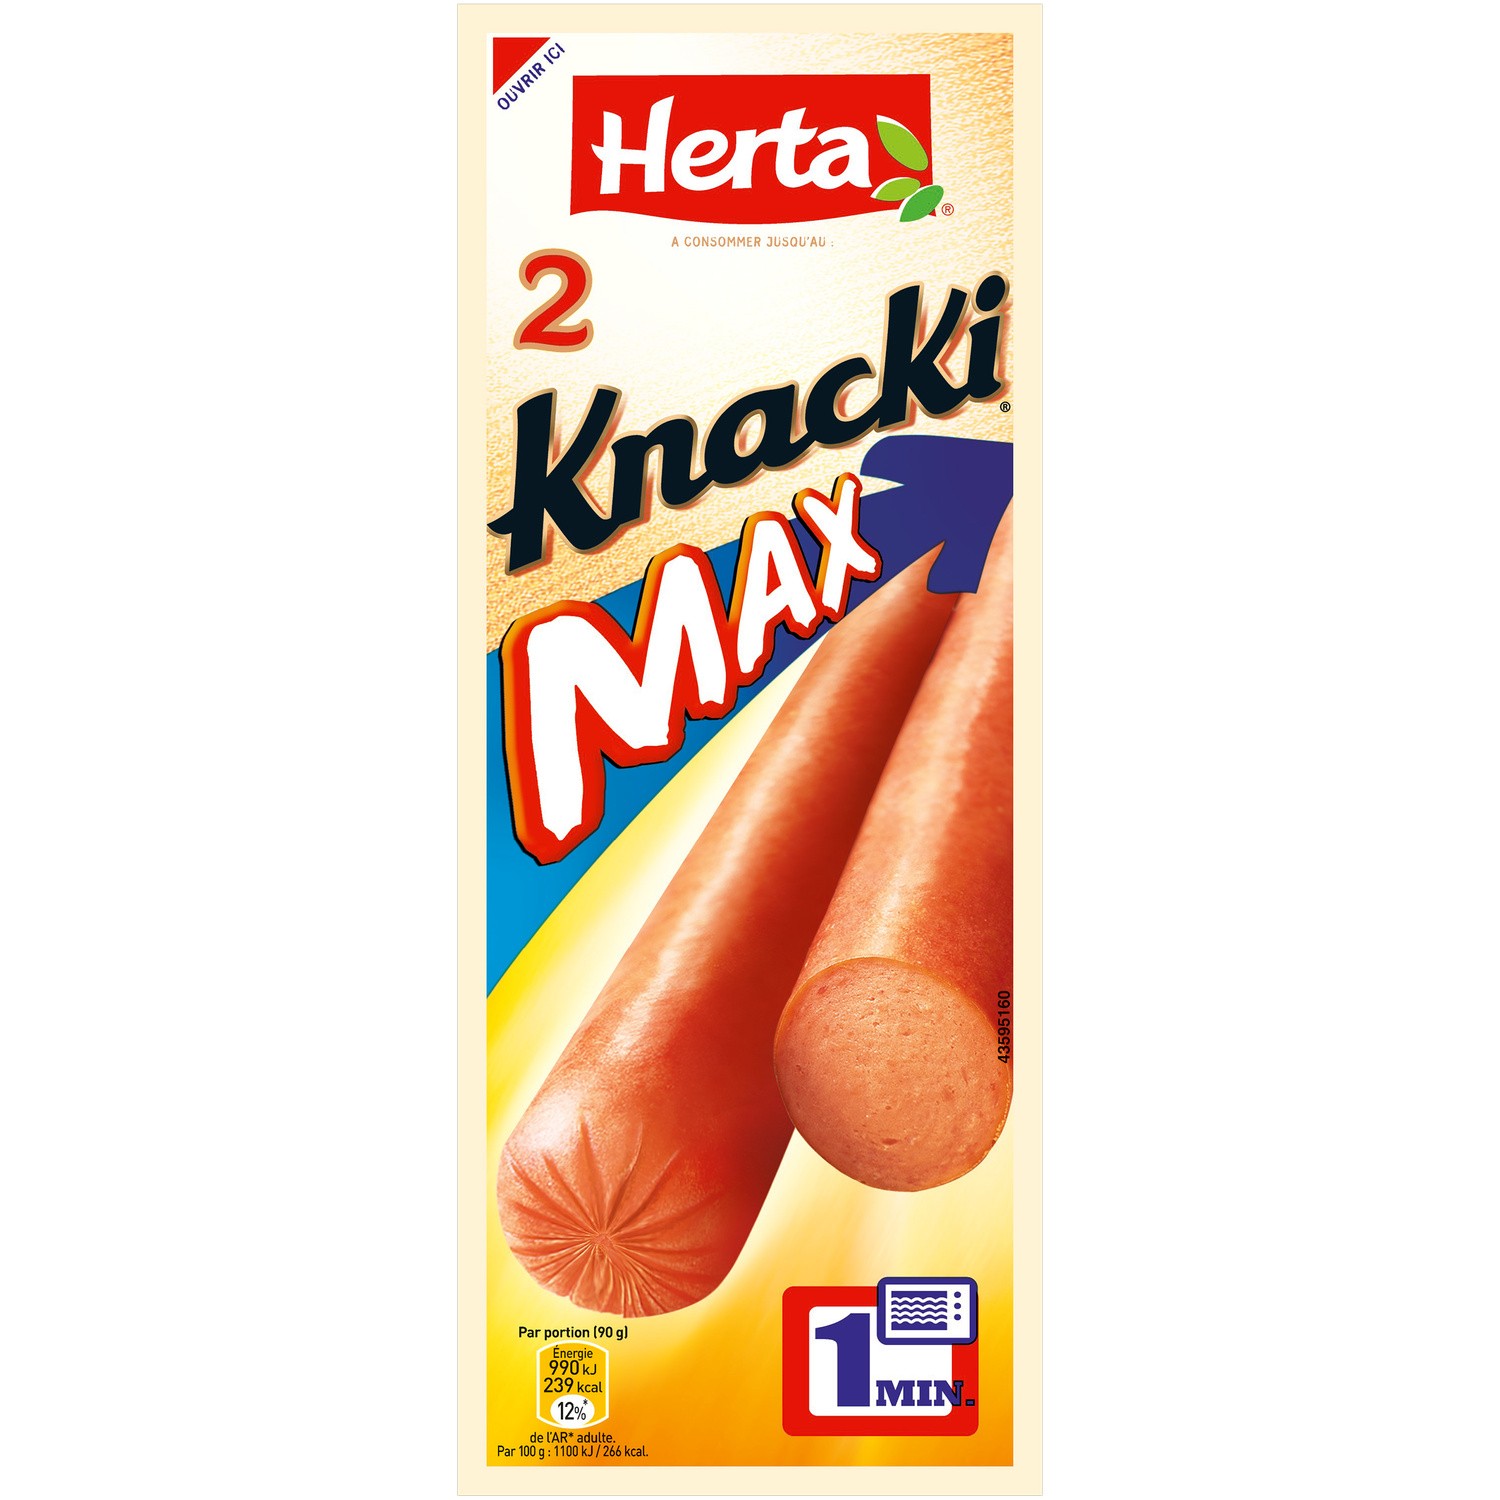 Achat / Vente Herta Knacki Original 100 % Pur Porc, 210g, 6 saucisses